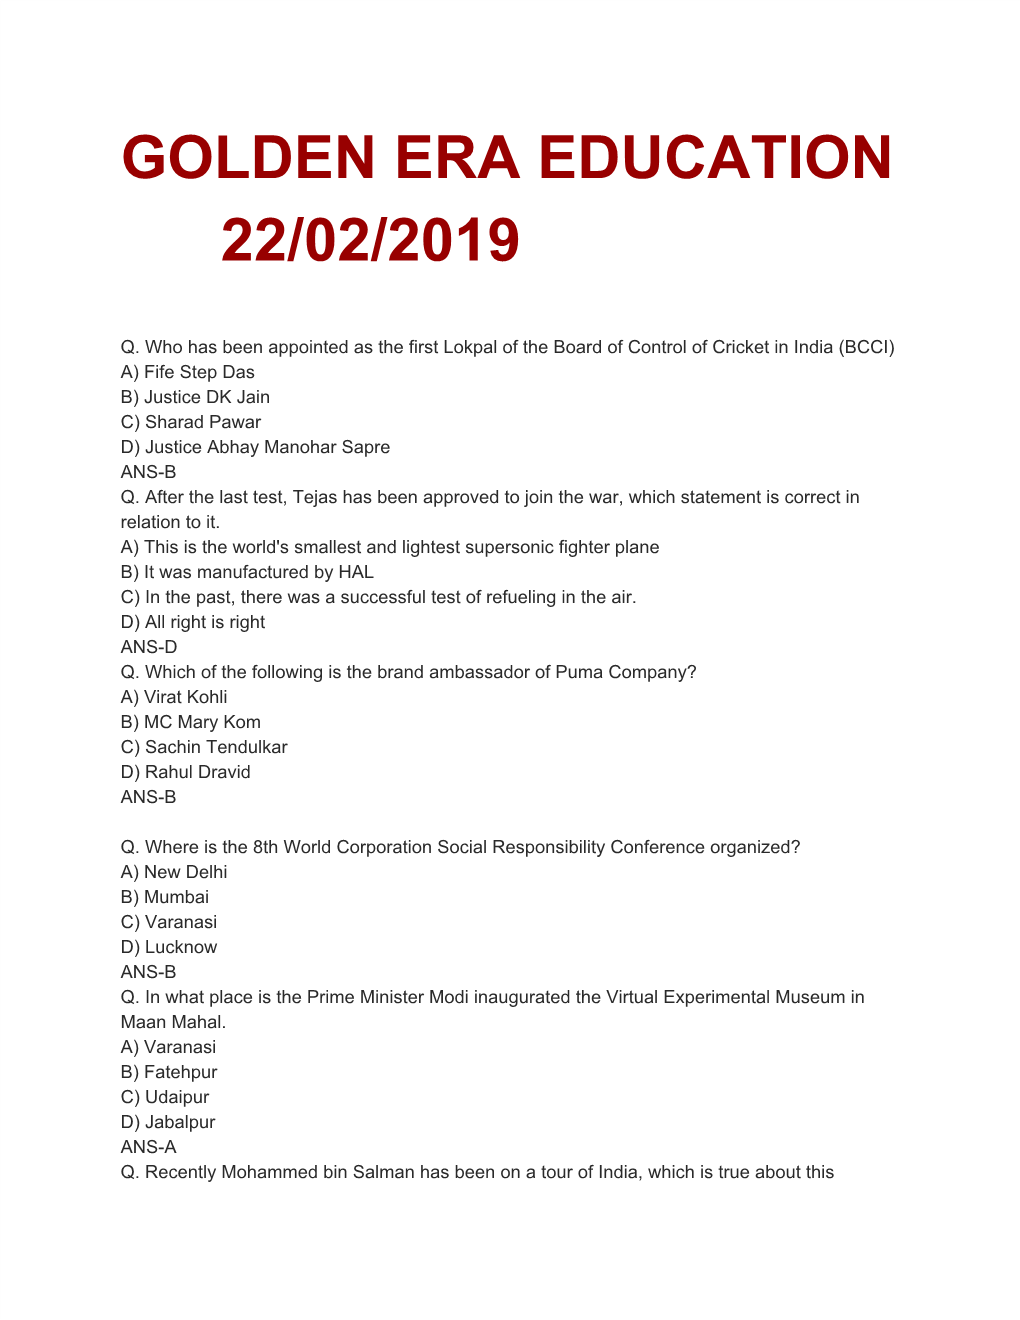 Golden Era Education 22/02/2019